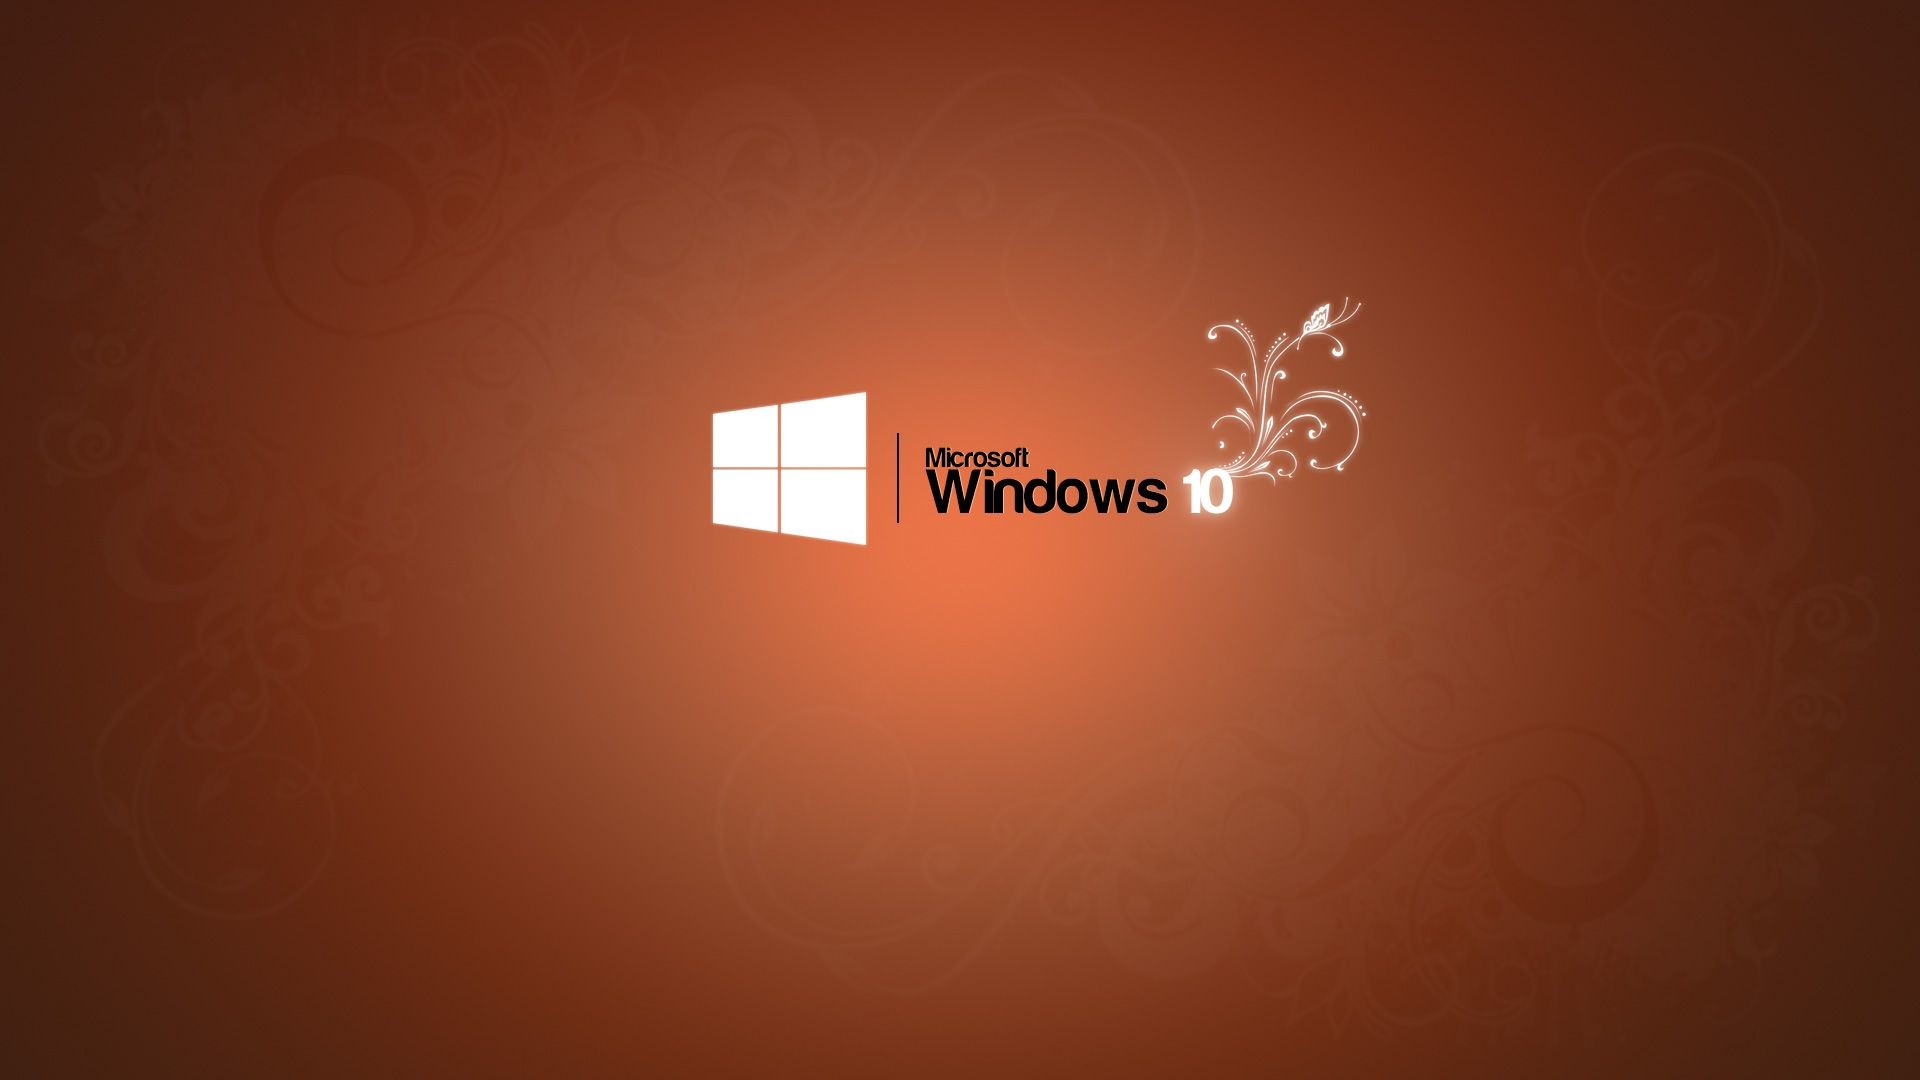 1920x1080 15 Top Windows 10 Wallpapers